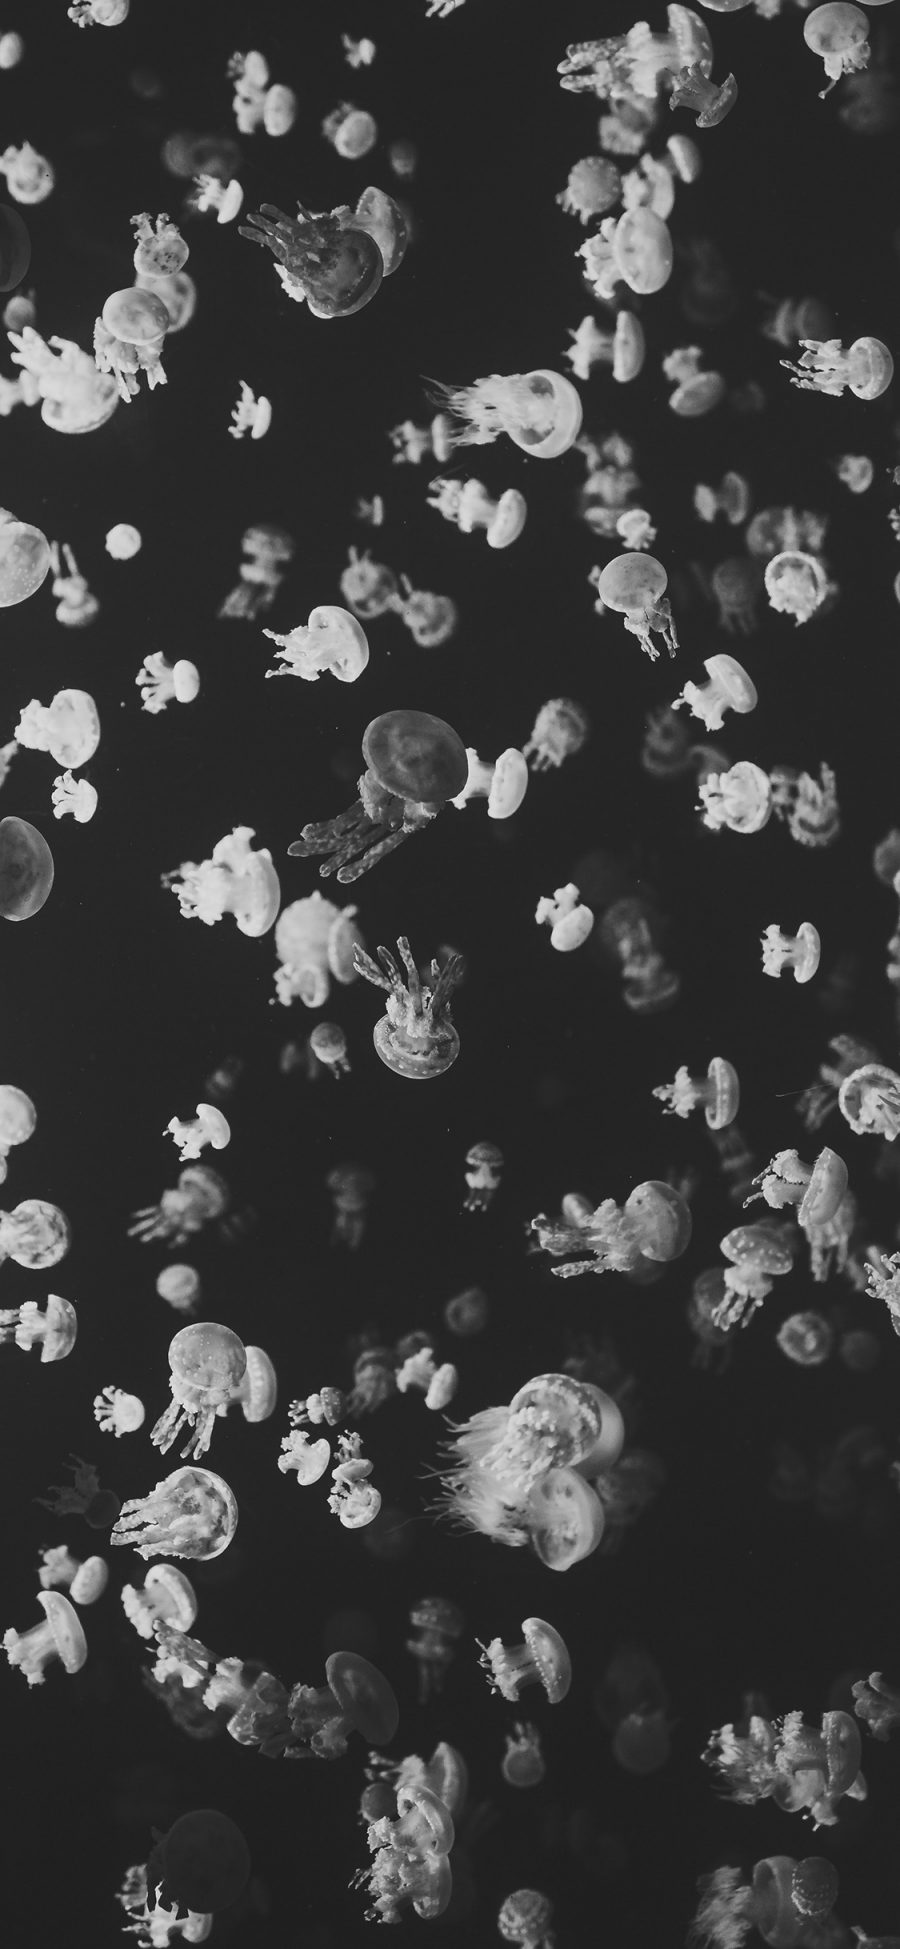 [2436×1125]水母 黑白 浮游 密集 苹果手机壁纸图片